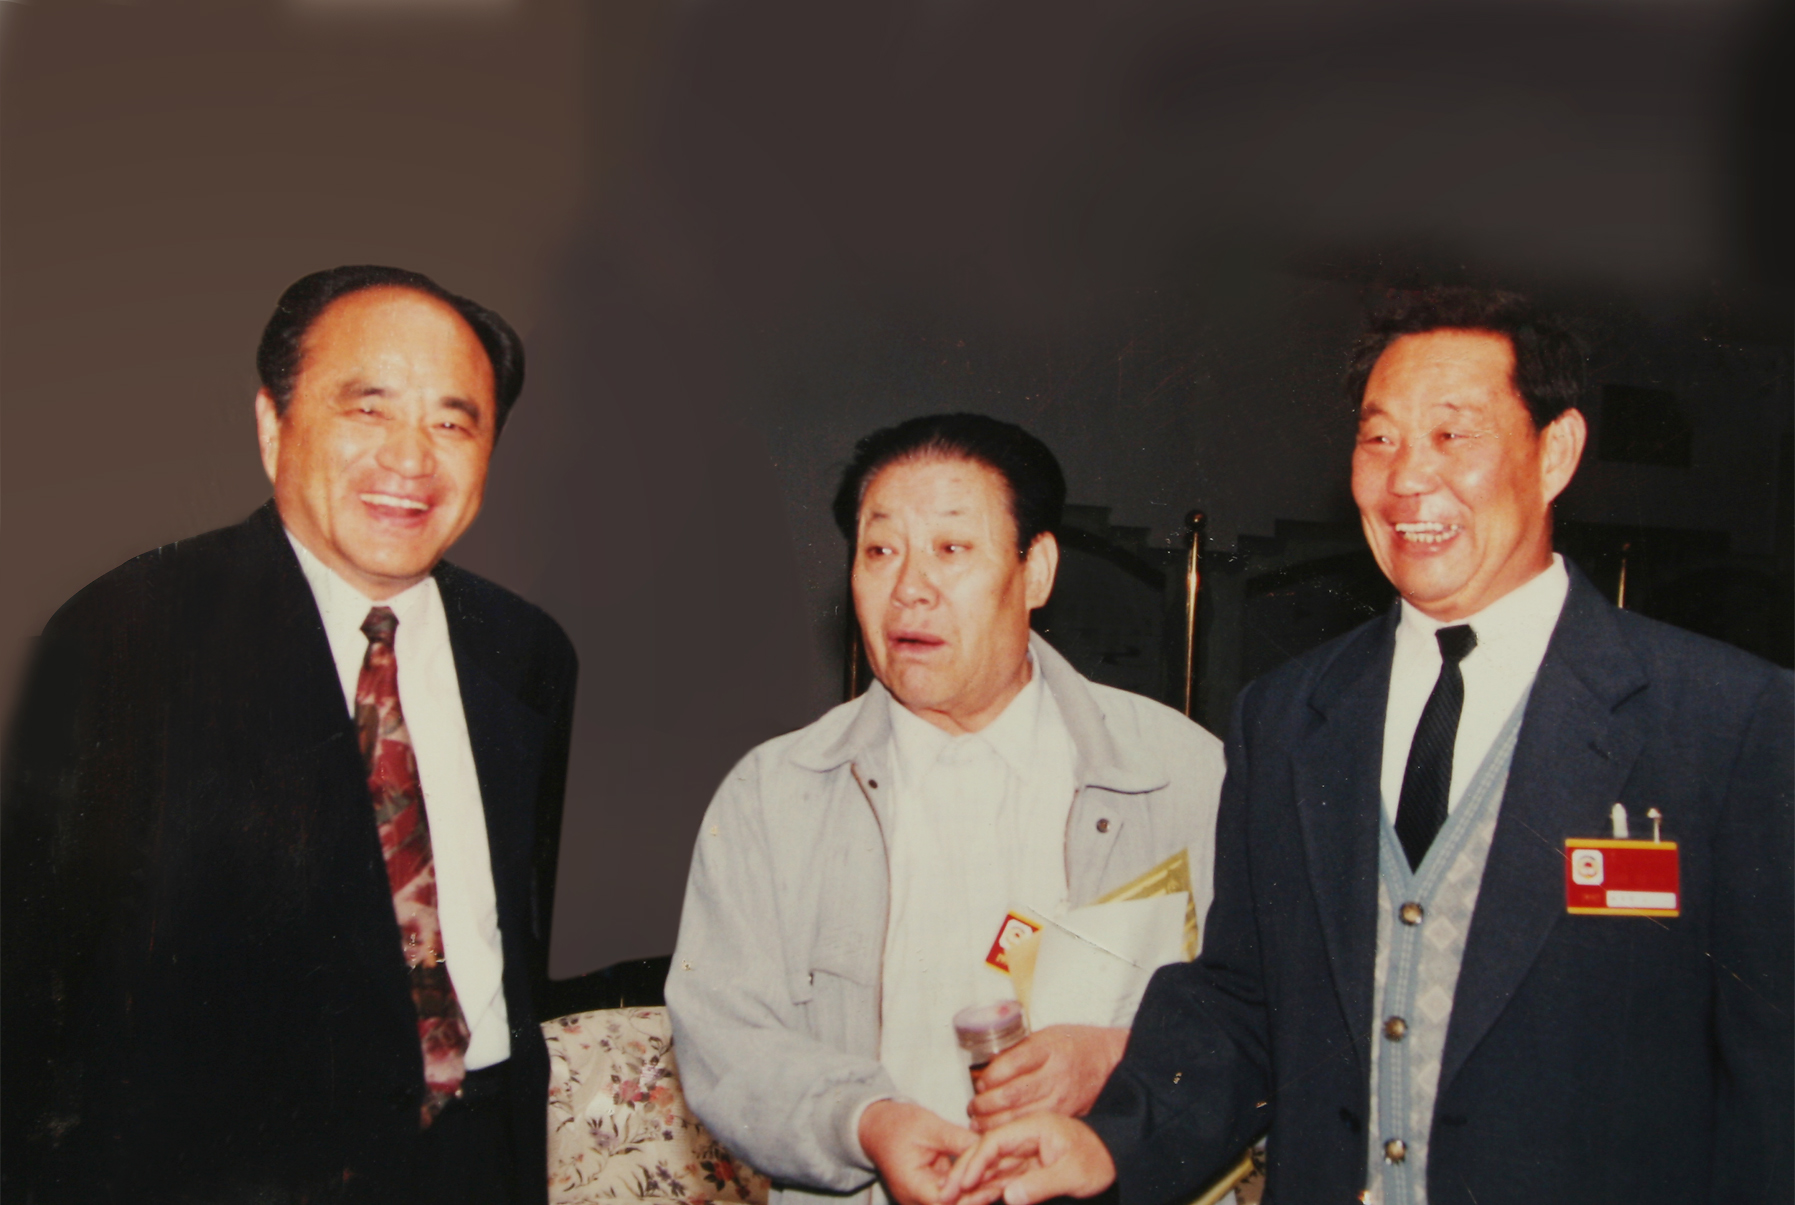 1998年5月，自治区党委书记毛如柏、自治区政协主席马思忠接见民进会员.jpg